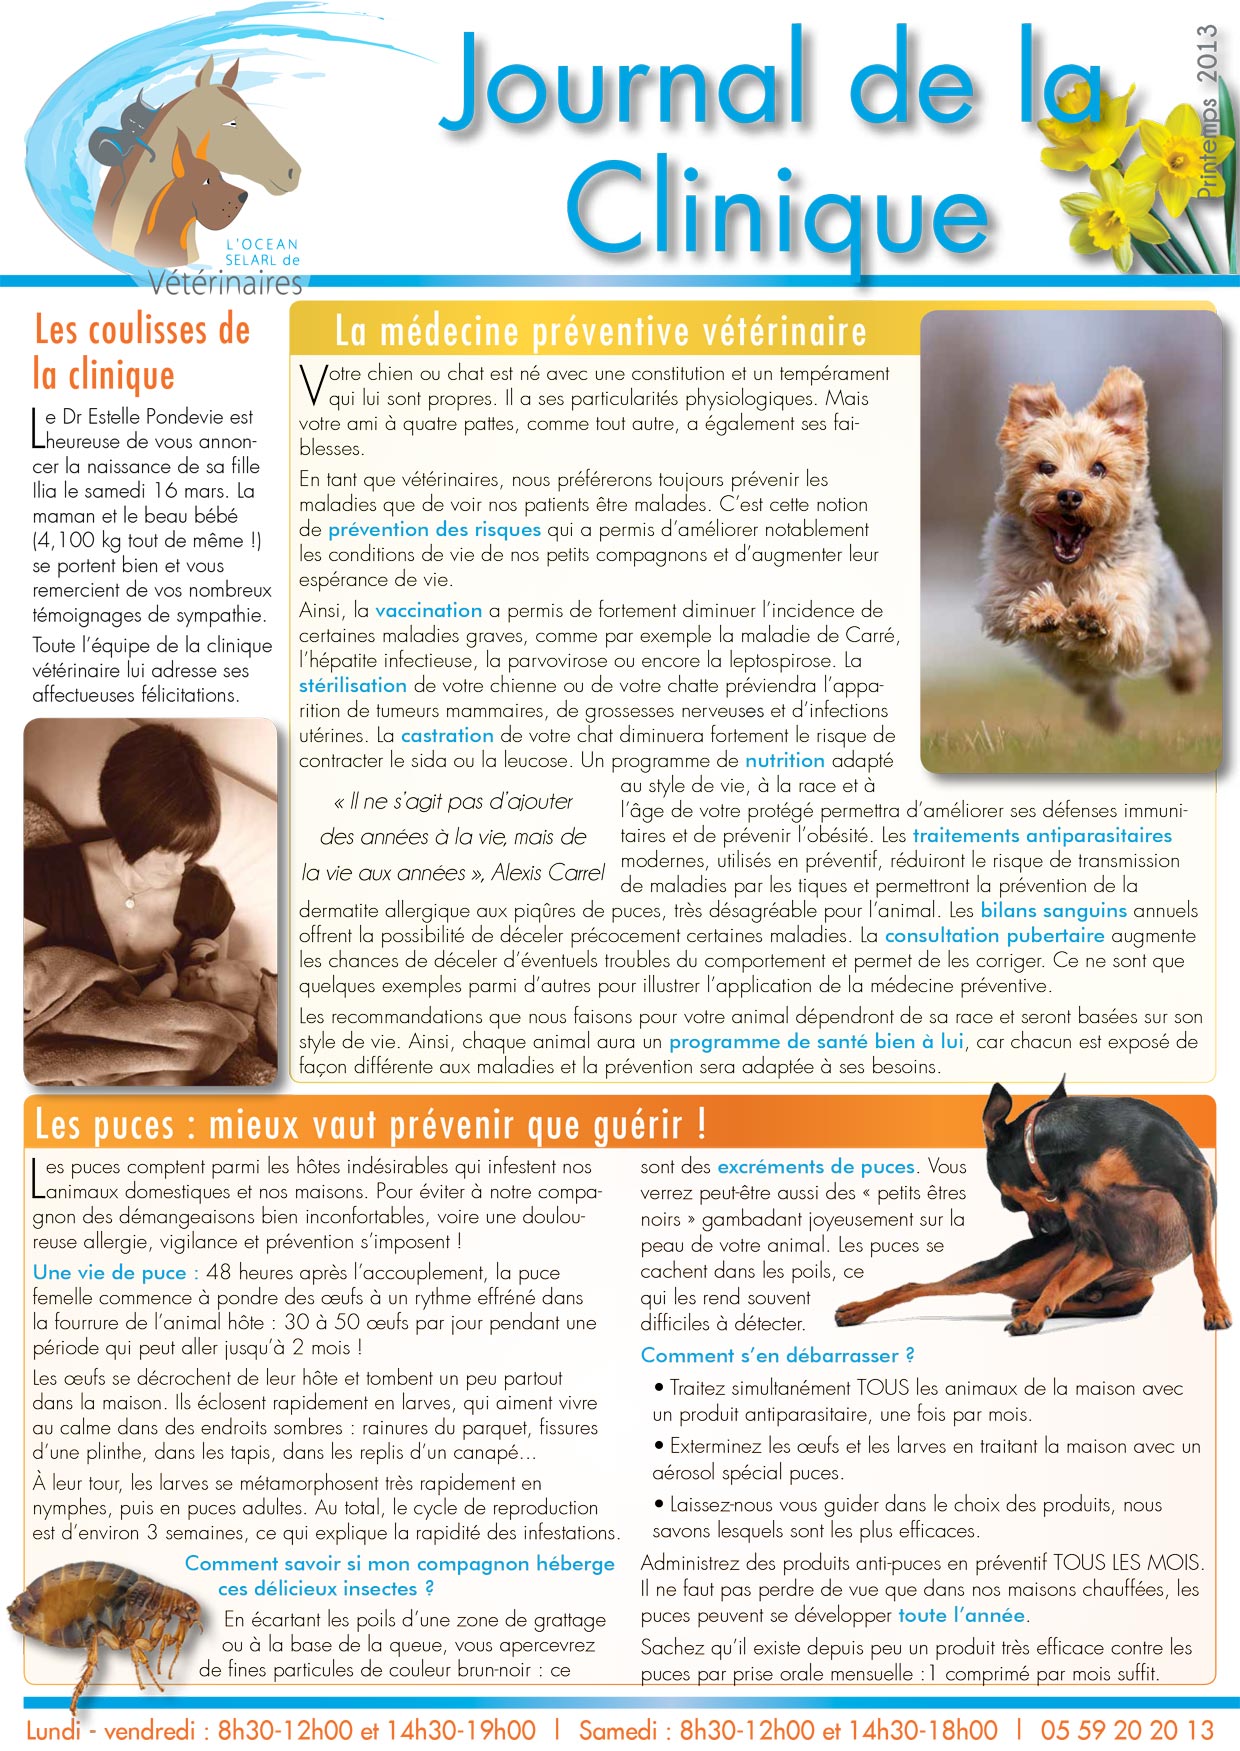 Le Journal de la Clinique - Printemps 2013 page 1